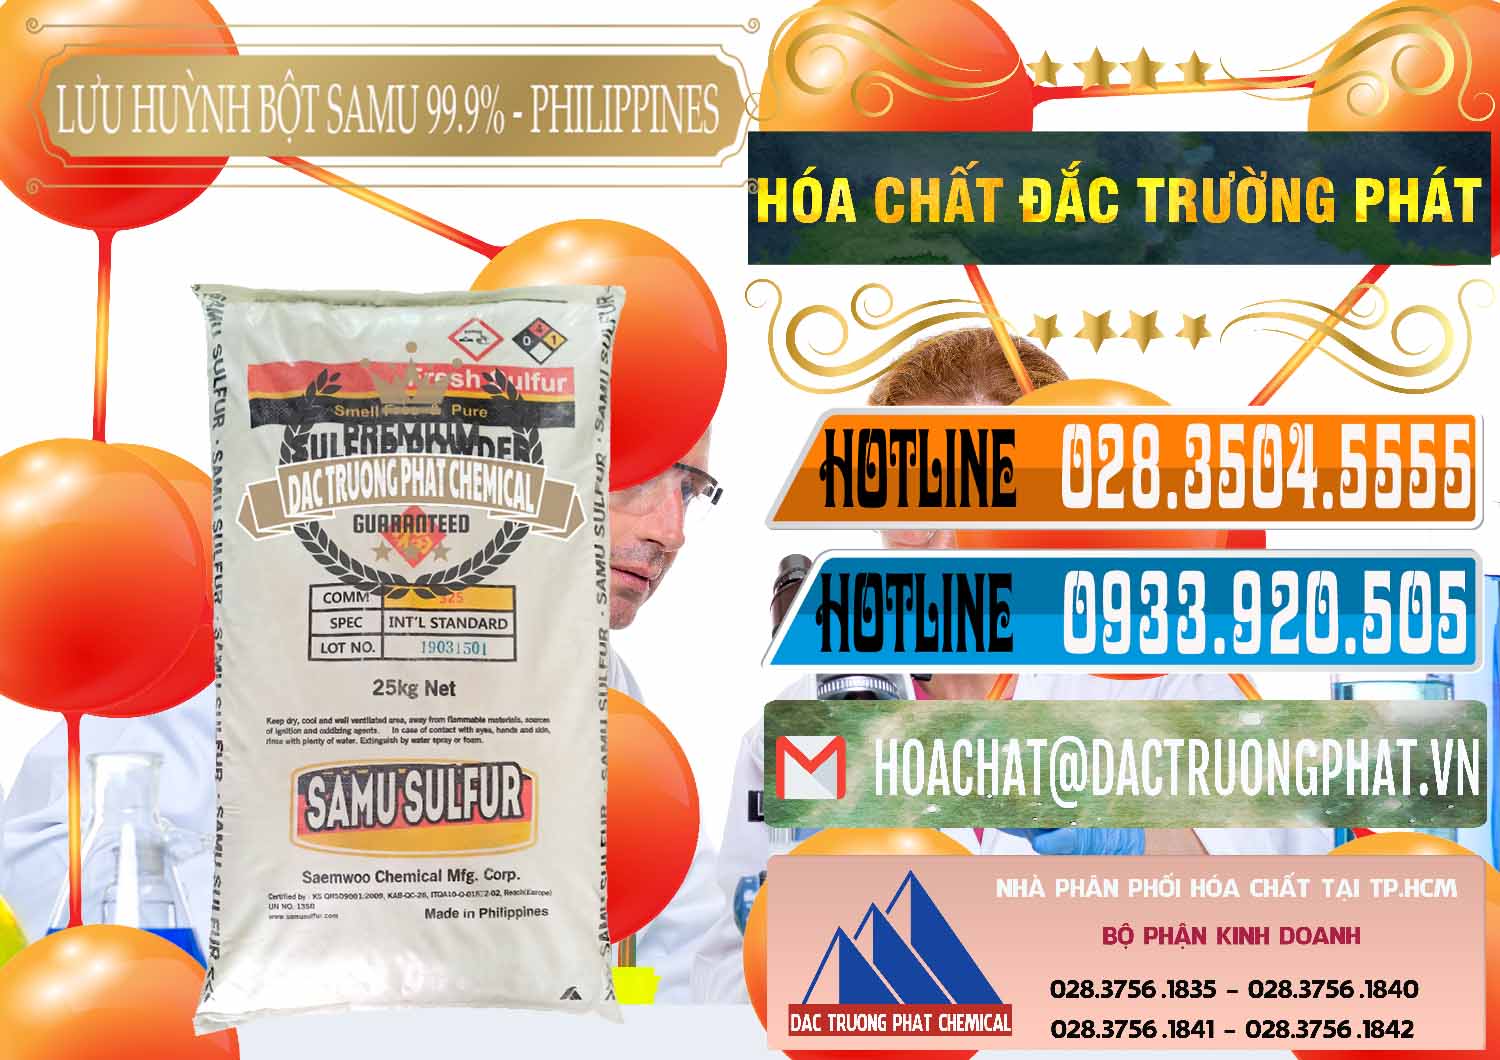 Cty bán _ phân phối Lưu huỳnh Bột - Sulfur Powder Samu Philippines - 0201 - Phân phối - bán hóa chất tại TP.HCM - stmp.net